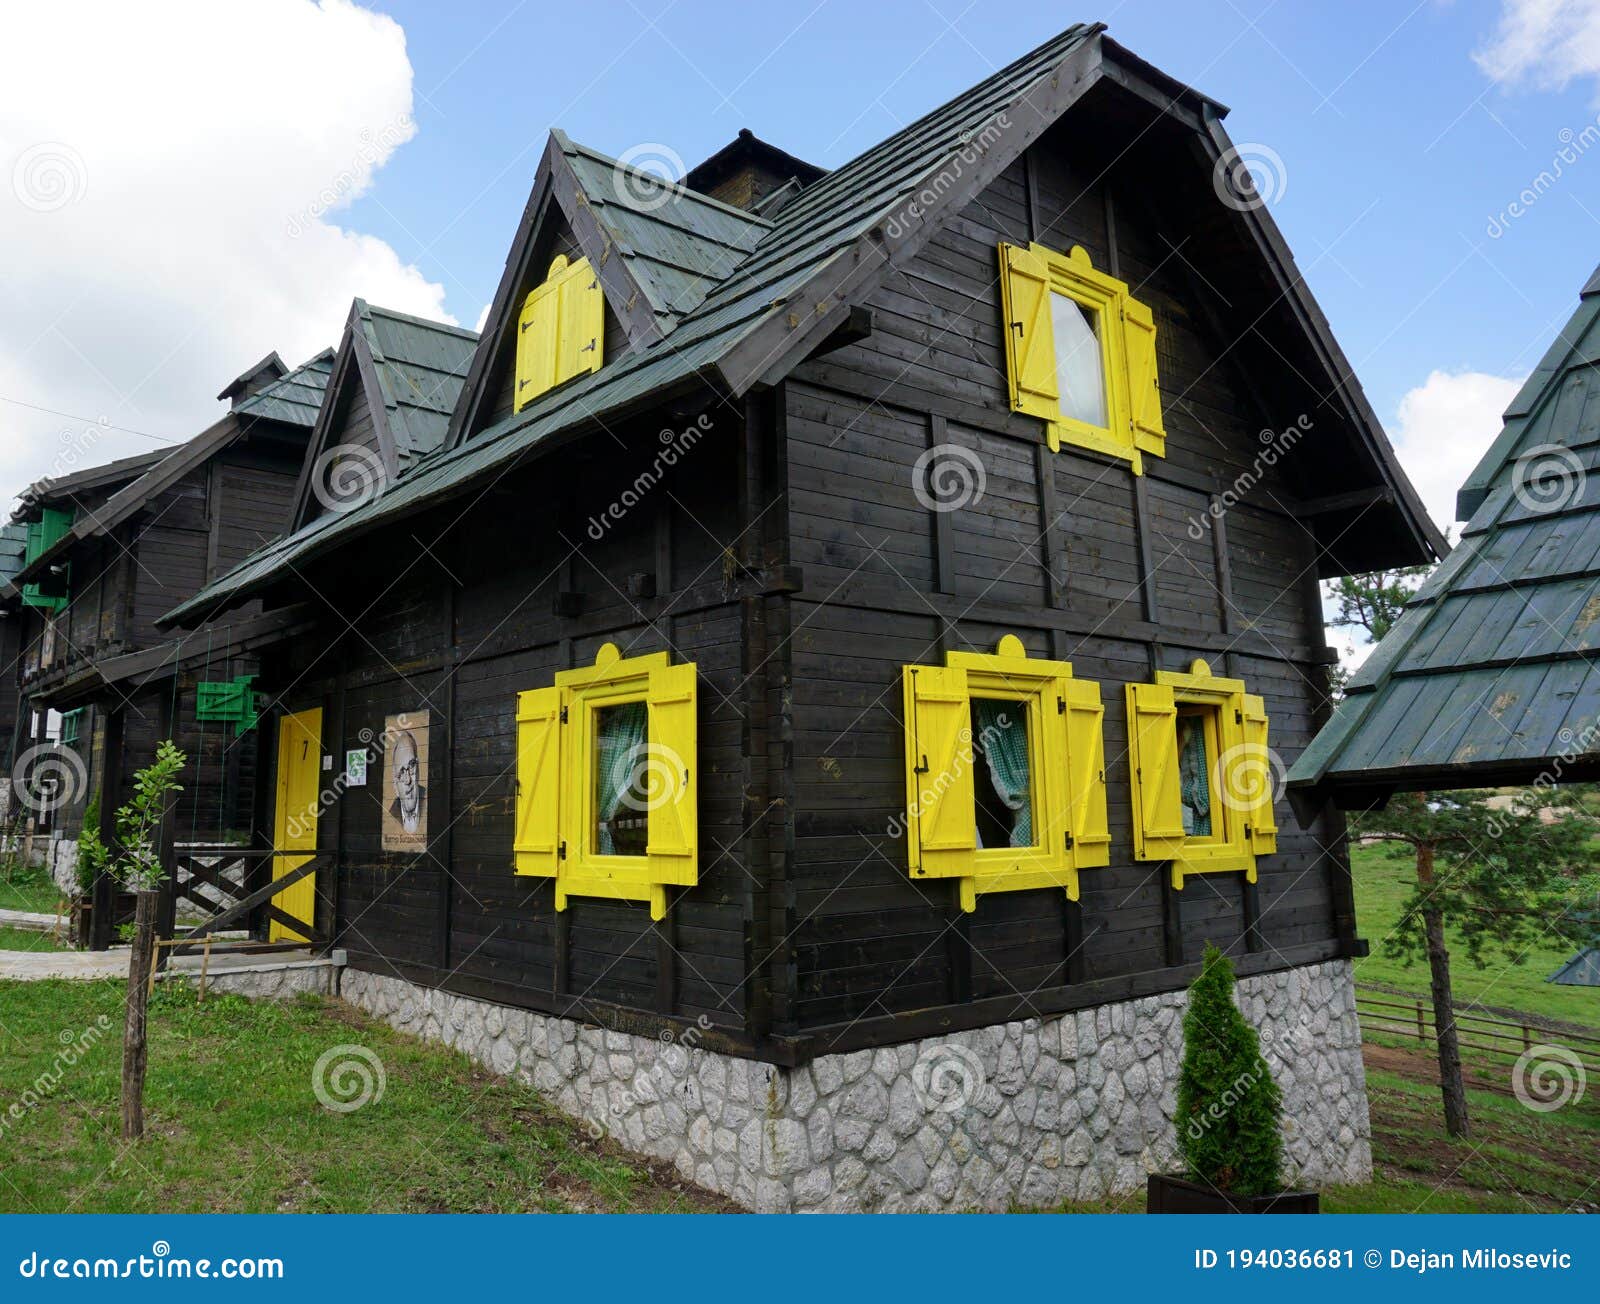 Contraventanas de madera etnofolk en una ventana con marco de madera  pintada de verde y amarillo exterior de una casa serbia vintage complejo  arquitectónico stanisici bielina bosnia y herzegovina cabaña de madera